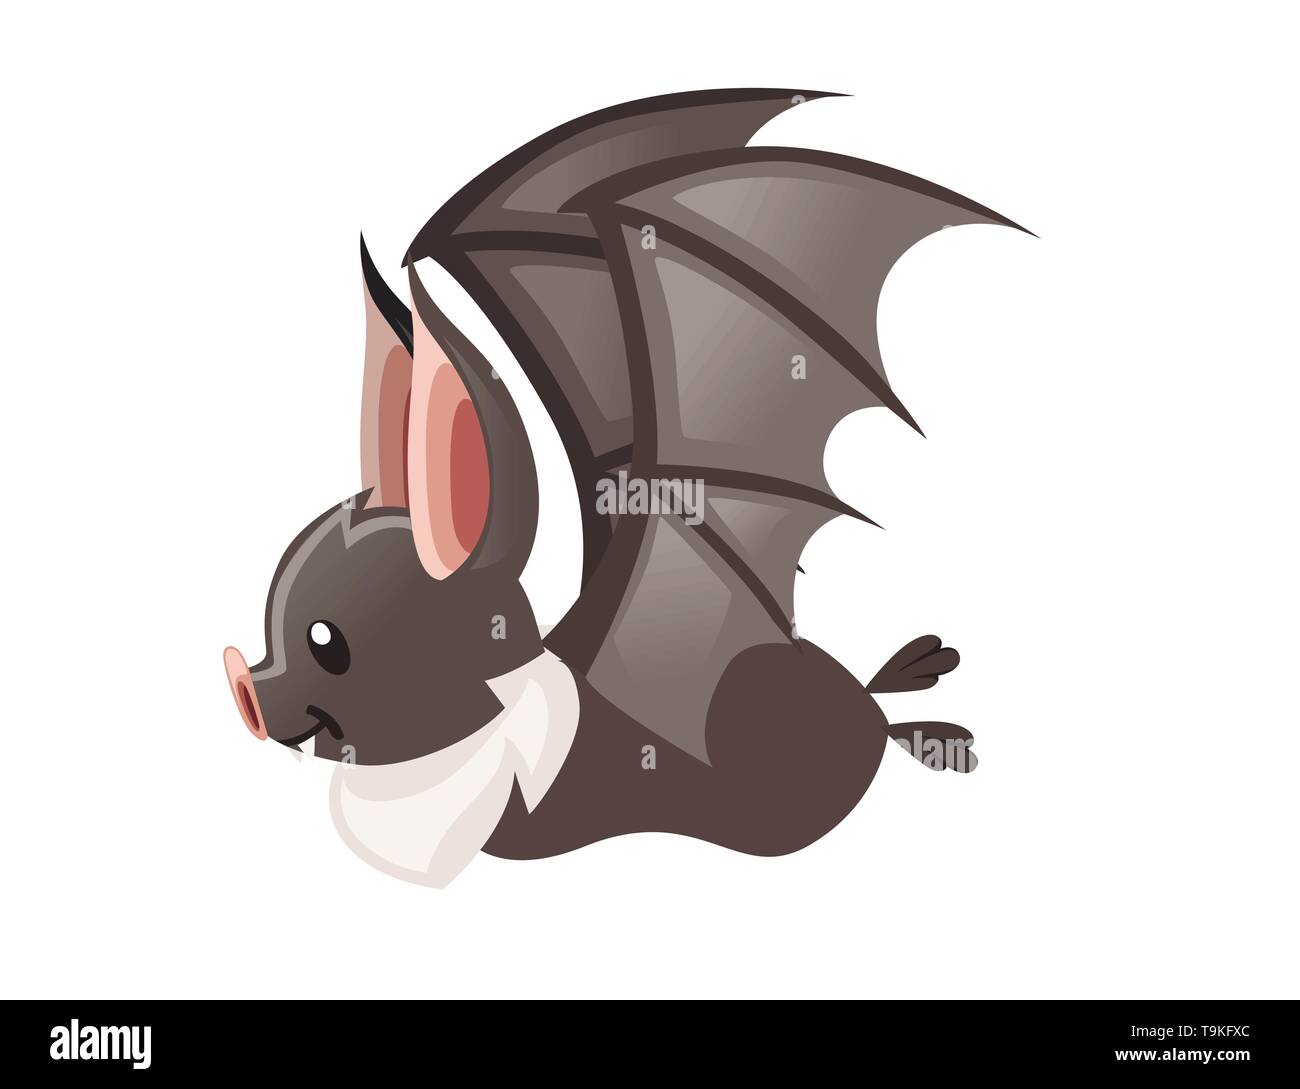 Cartoon bat hi-res stock photography and images - Alamy